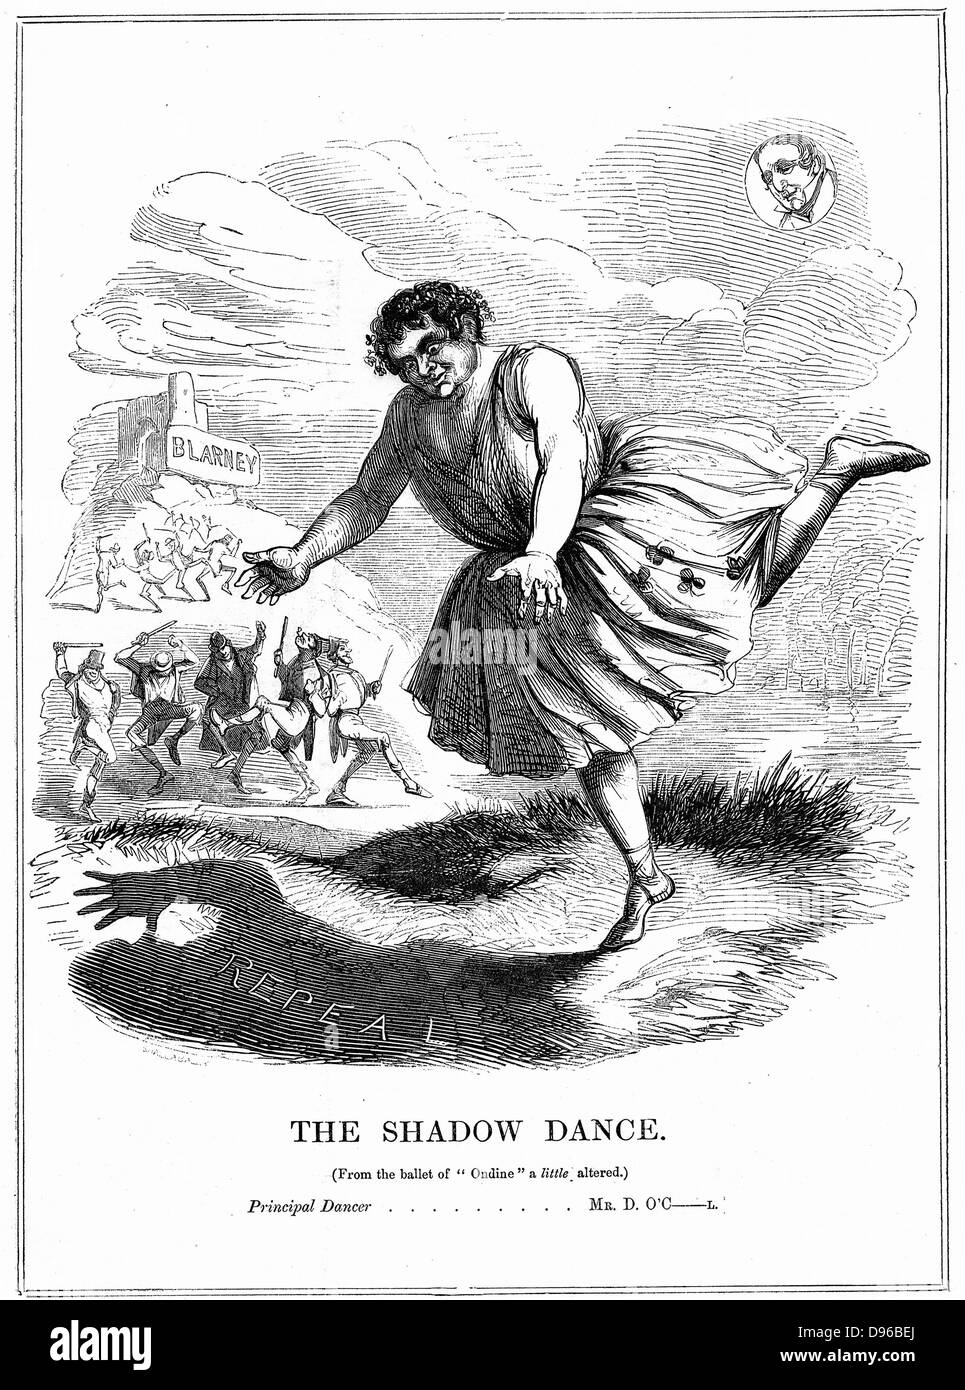 La danse de l'ombre' Daniel O'Connell (1775-1847) 'Le Libérateur', homme politique irlandais, chef de l'abrogation de l'union avec la Grande-Bretagne (mouvement), montré comme un homme de peu de substance, mais avec le don de mots, après avoir embrassé la pierre de Blarney. Caricature de 'Punch', Londres, 1843. Gravure Banque D'Images